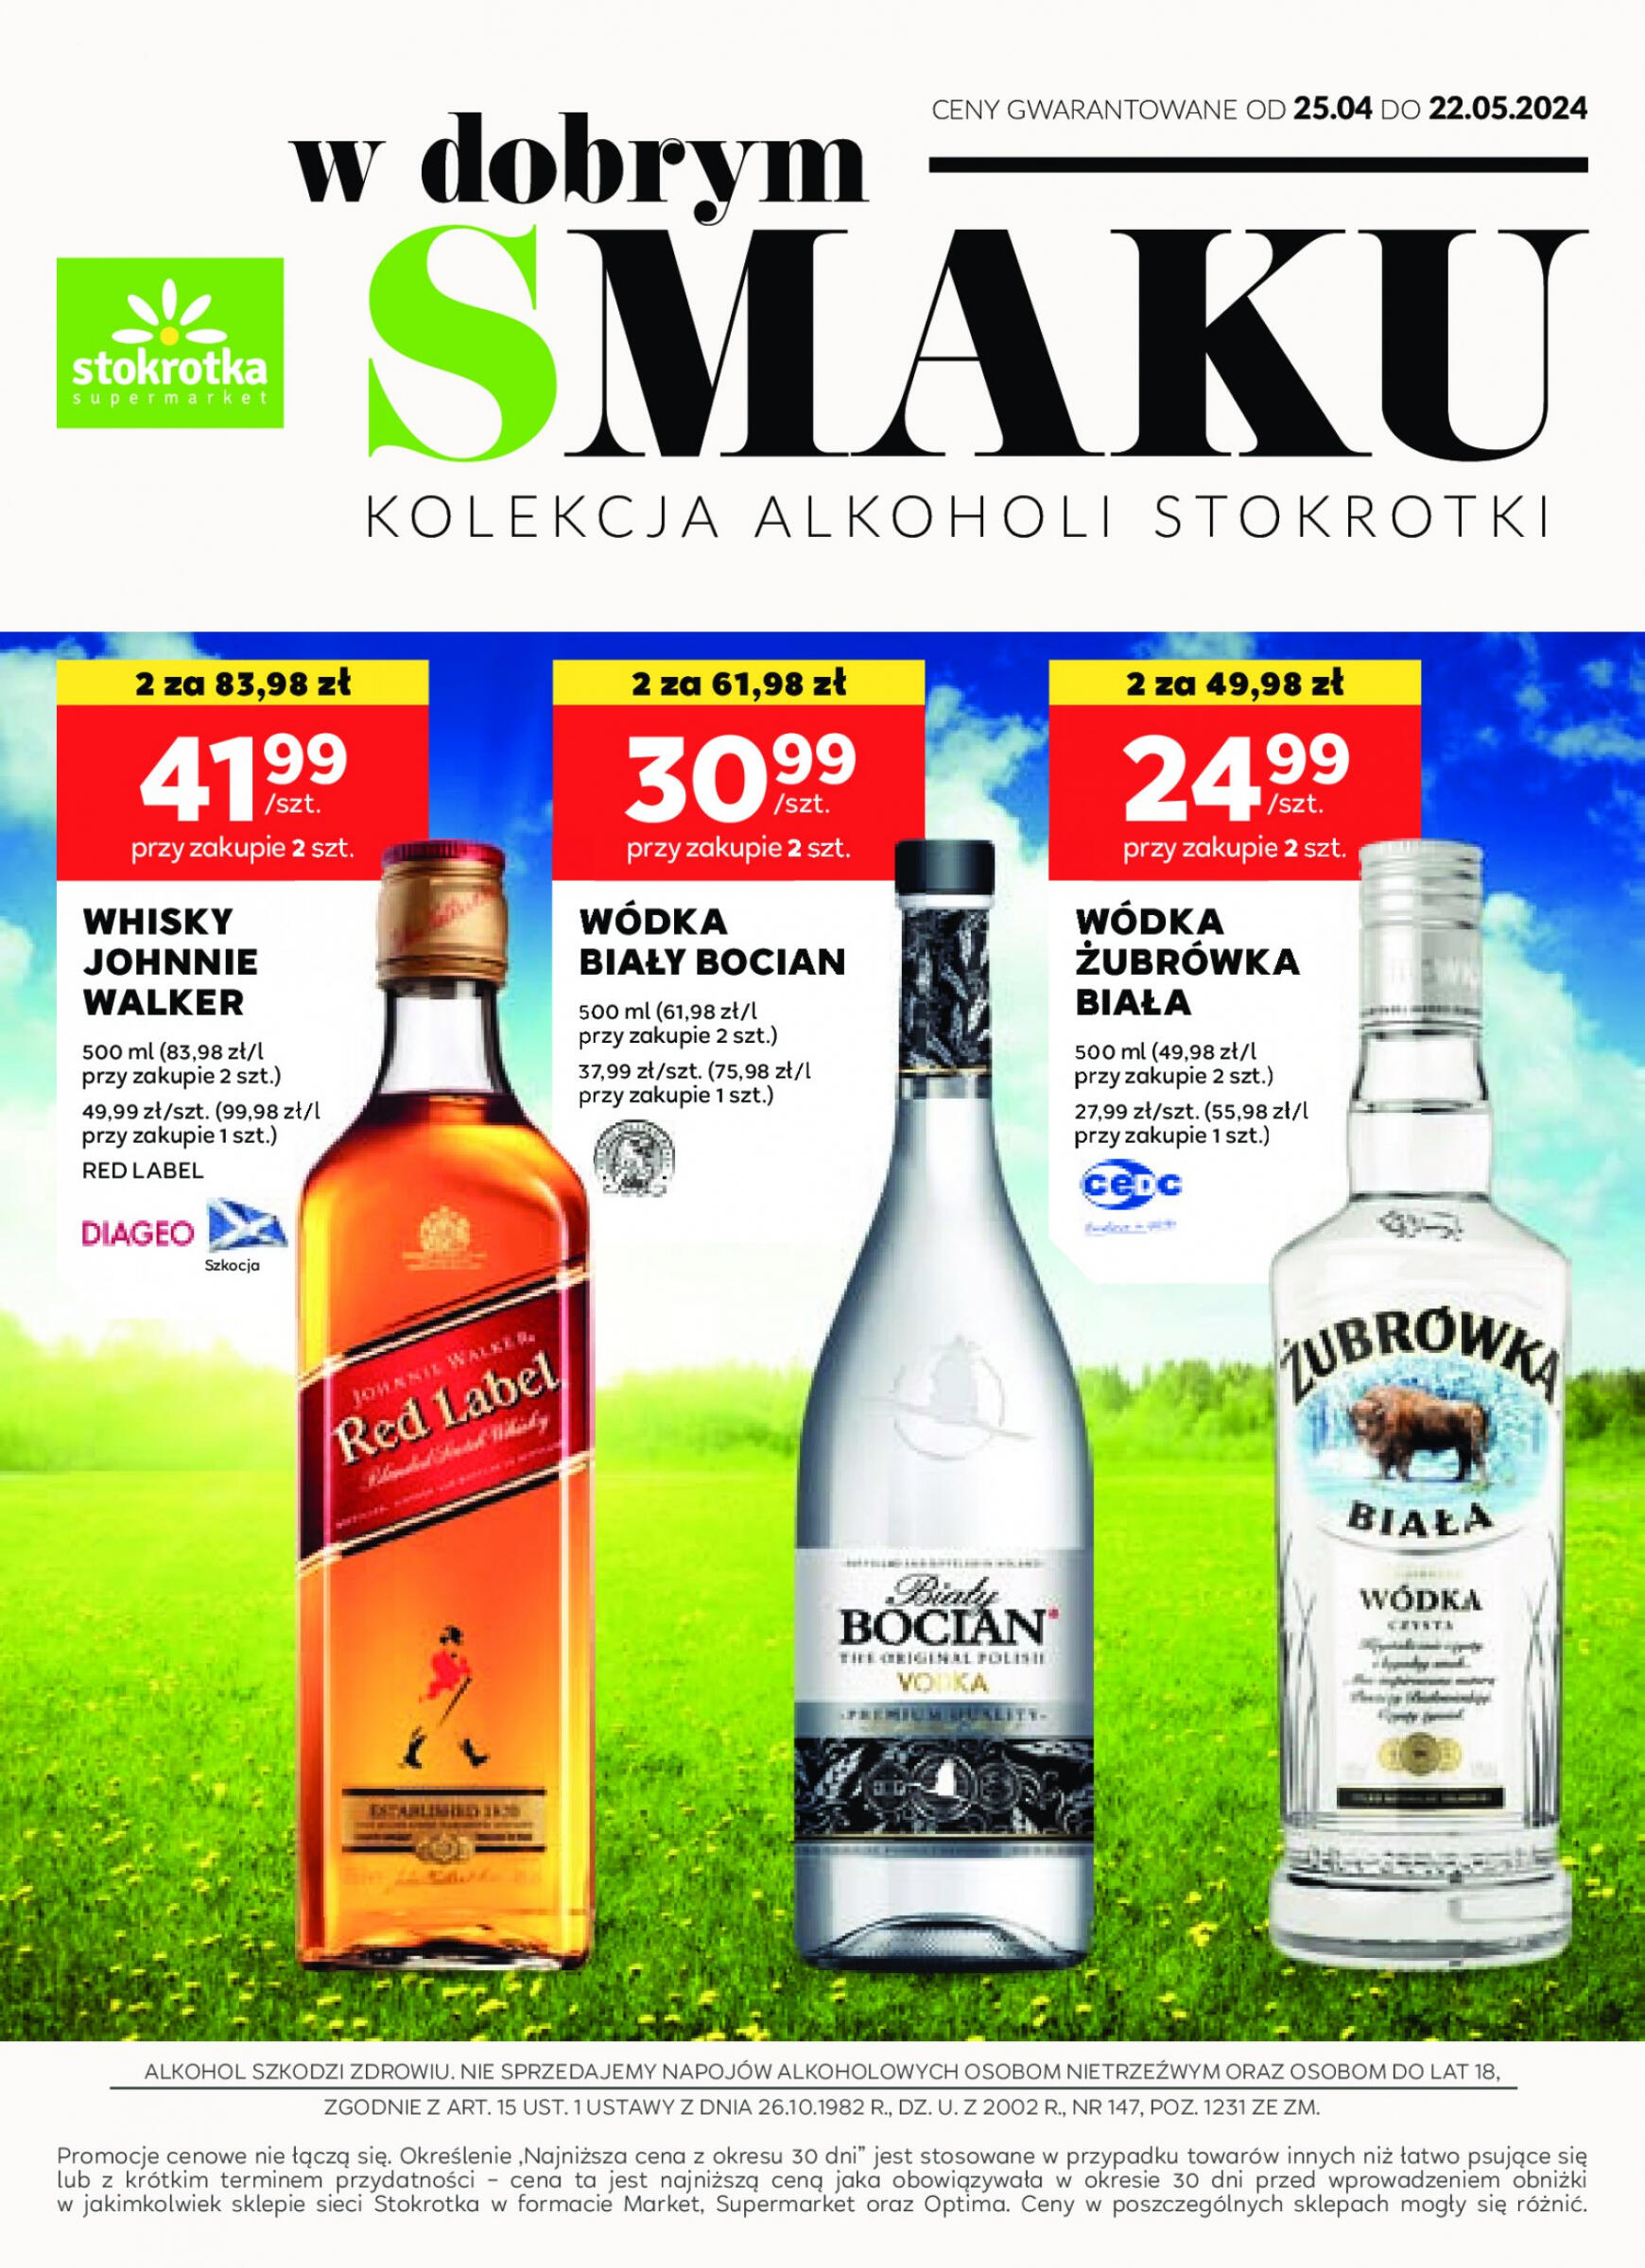 stokrotka - Stokrotka Supermarket - Oferta alkoholowa gazetka aktualna ważna od 25.04. - 22.05. - page: 1